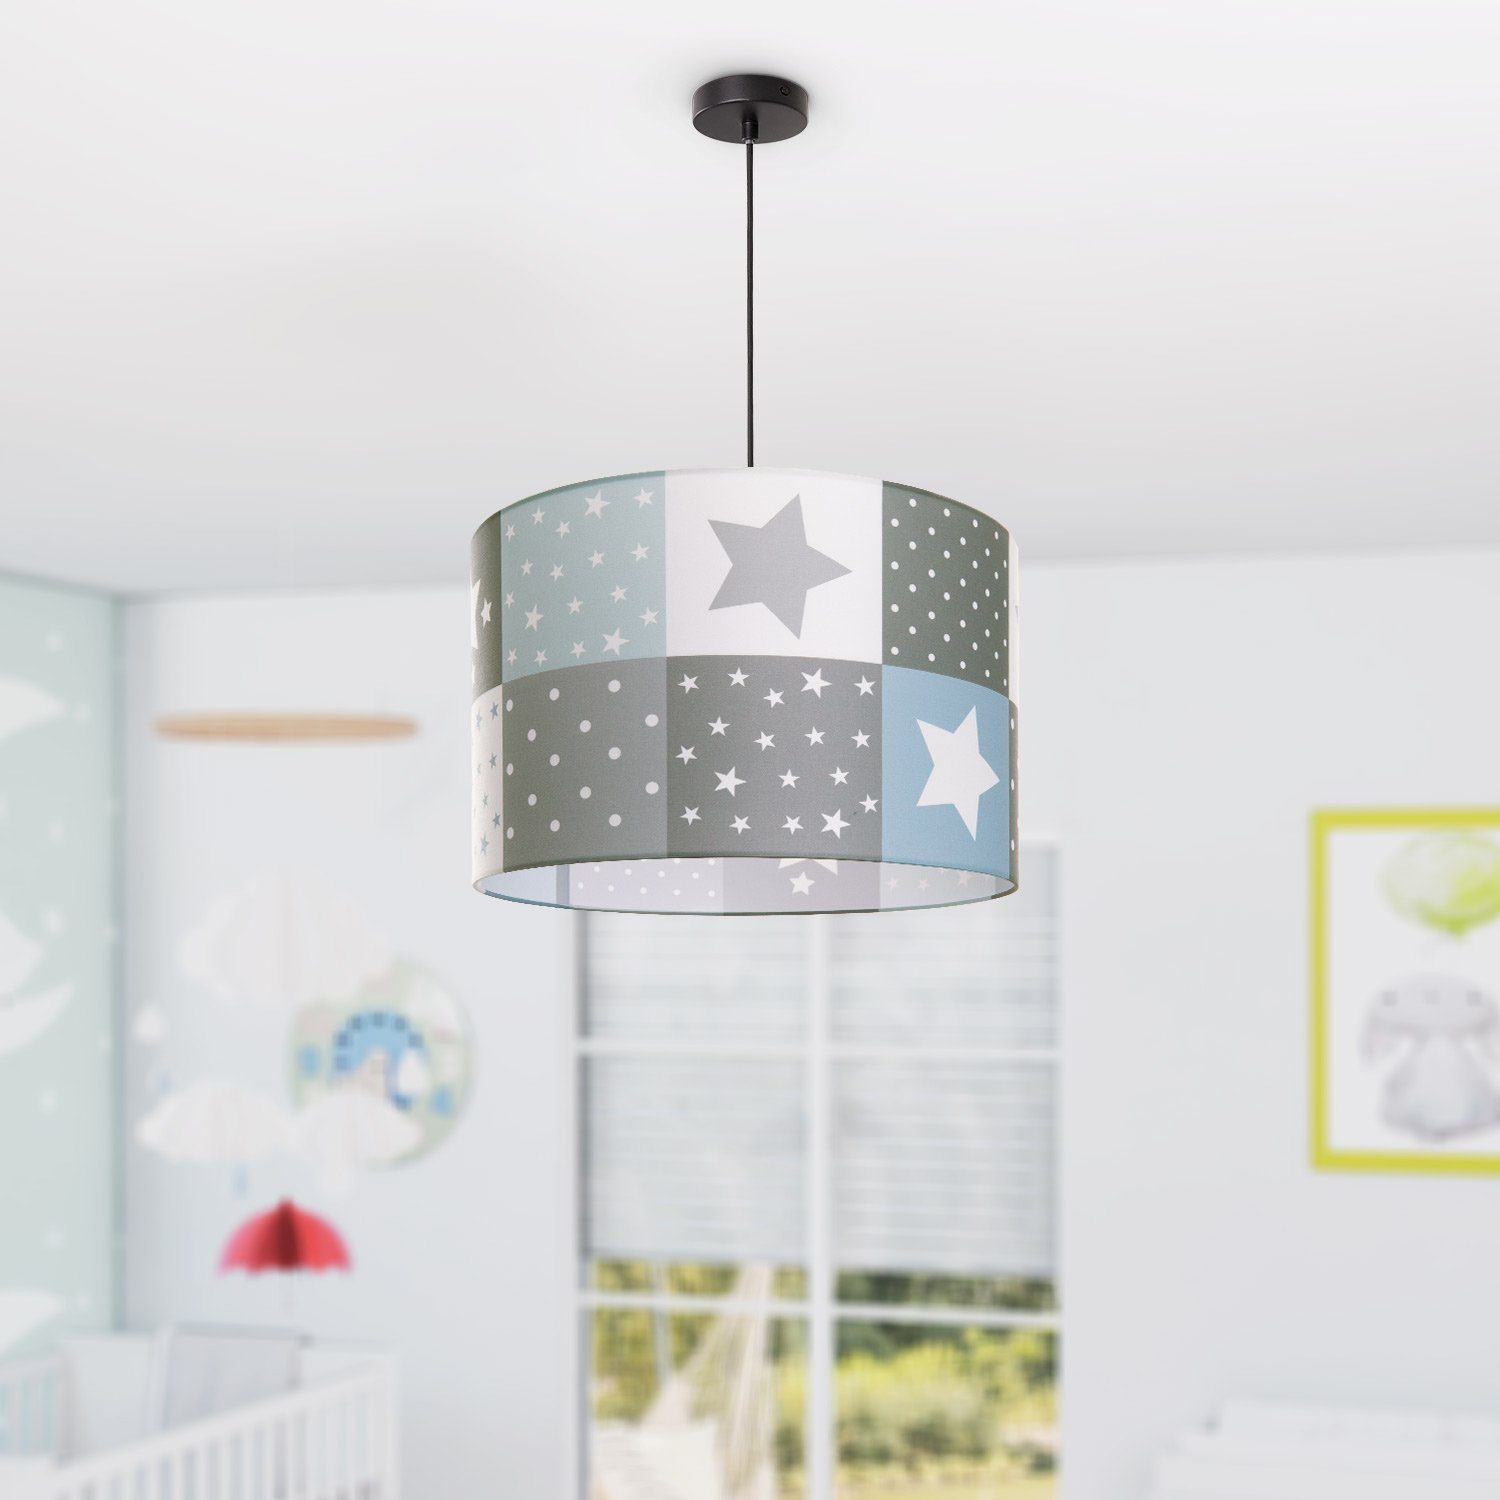 Sternen Lampe Cosmo LED Deckenlampe Home Pendelleuchte Leuchtmittel, Motiv Paco E27 345, ohne Kinderzimmer Kinderlampe